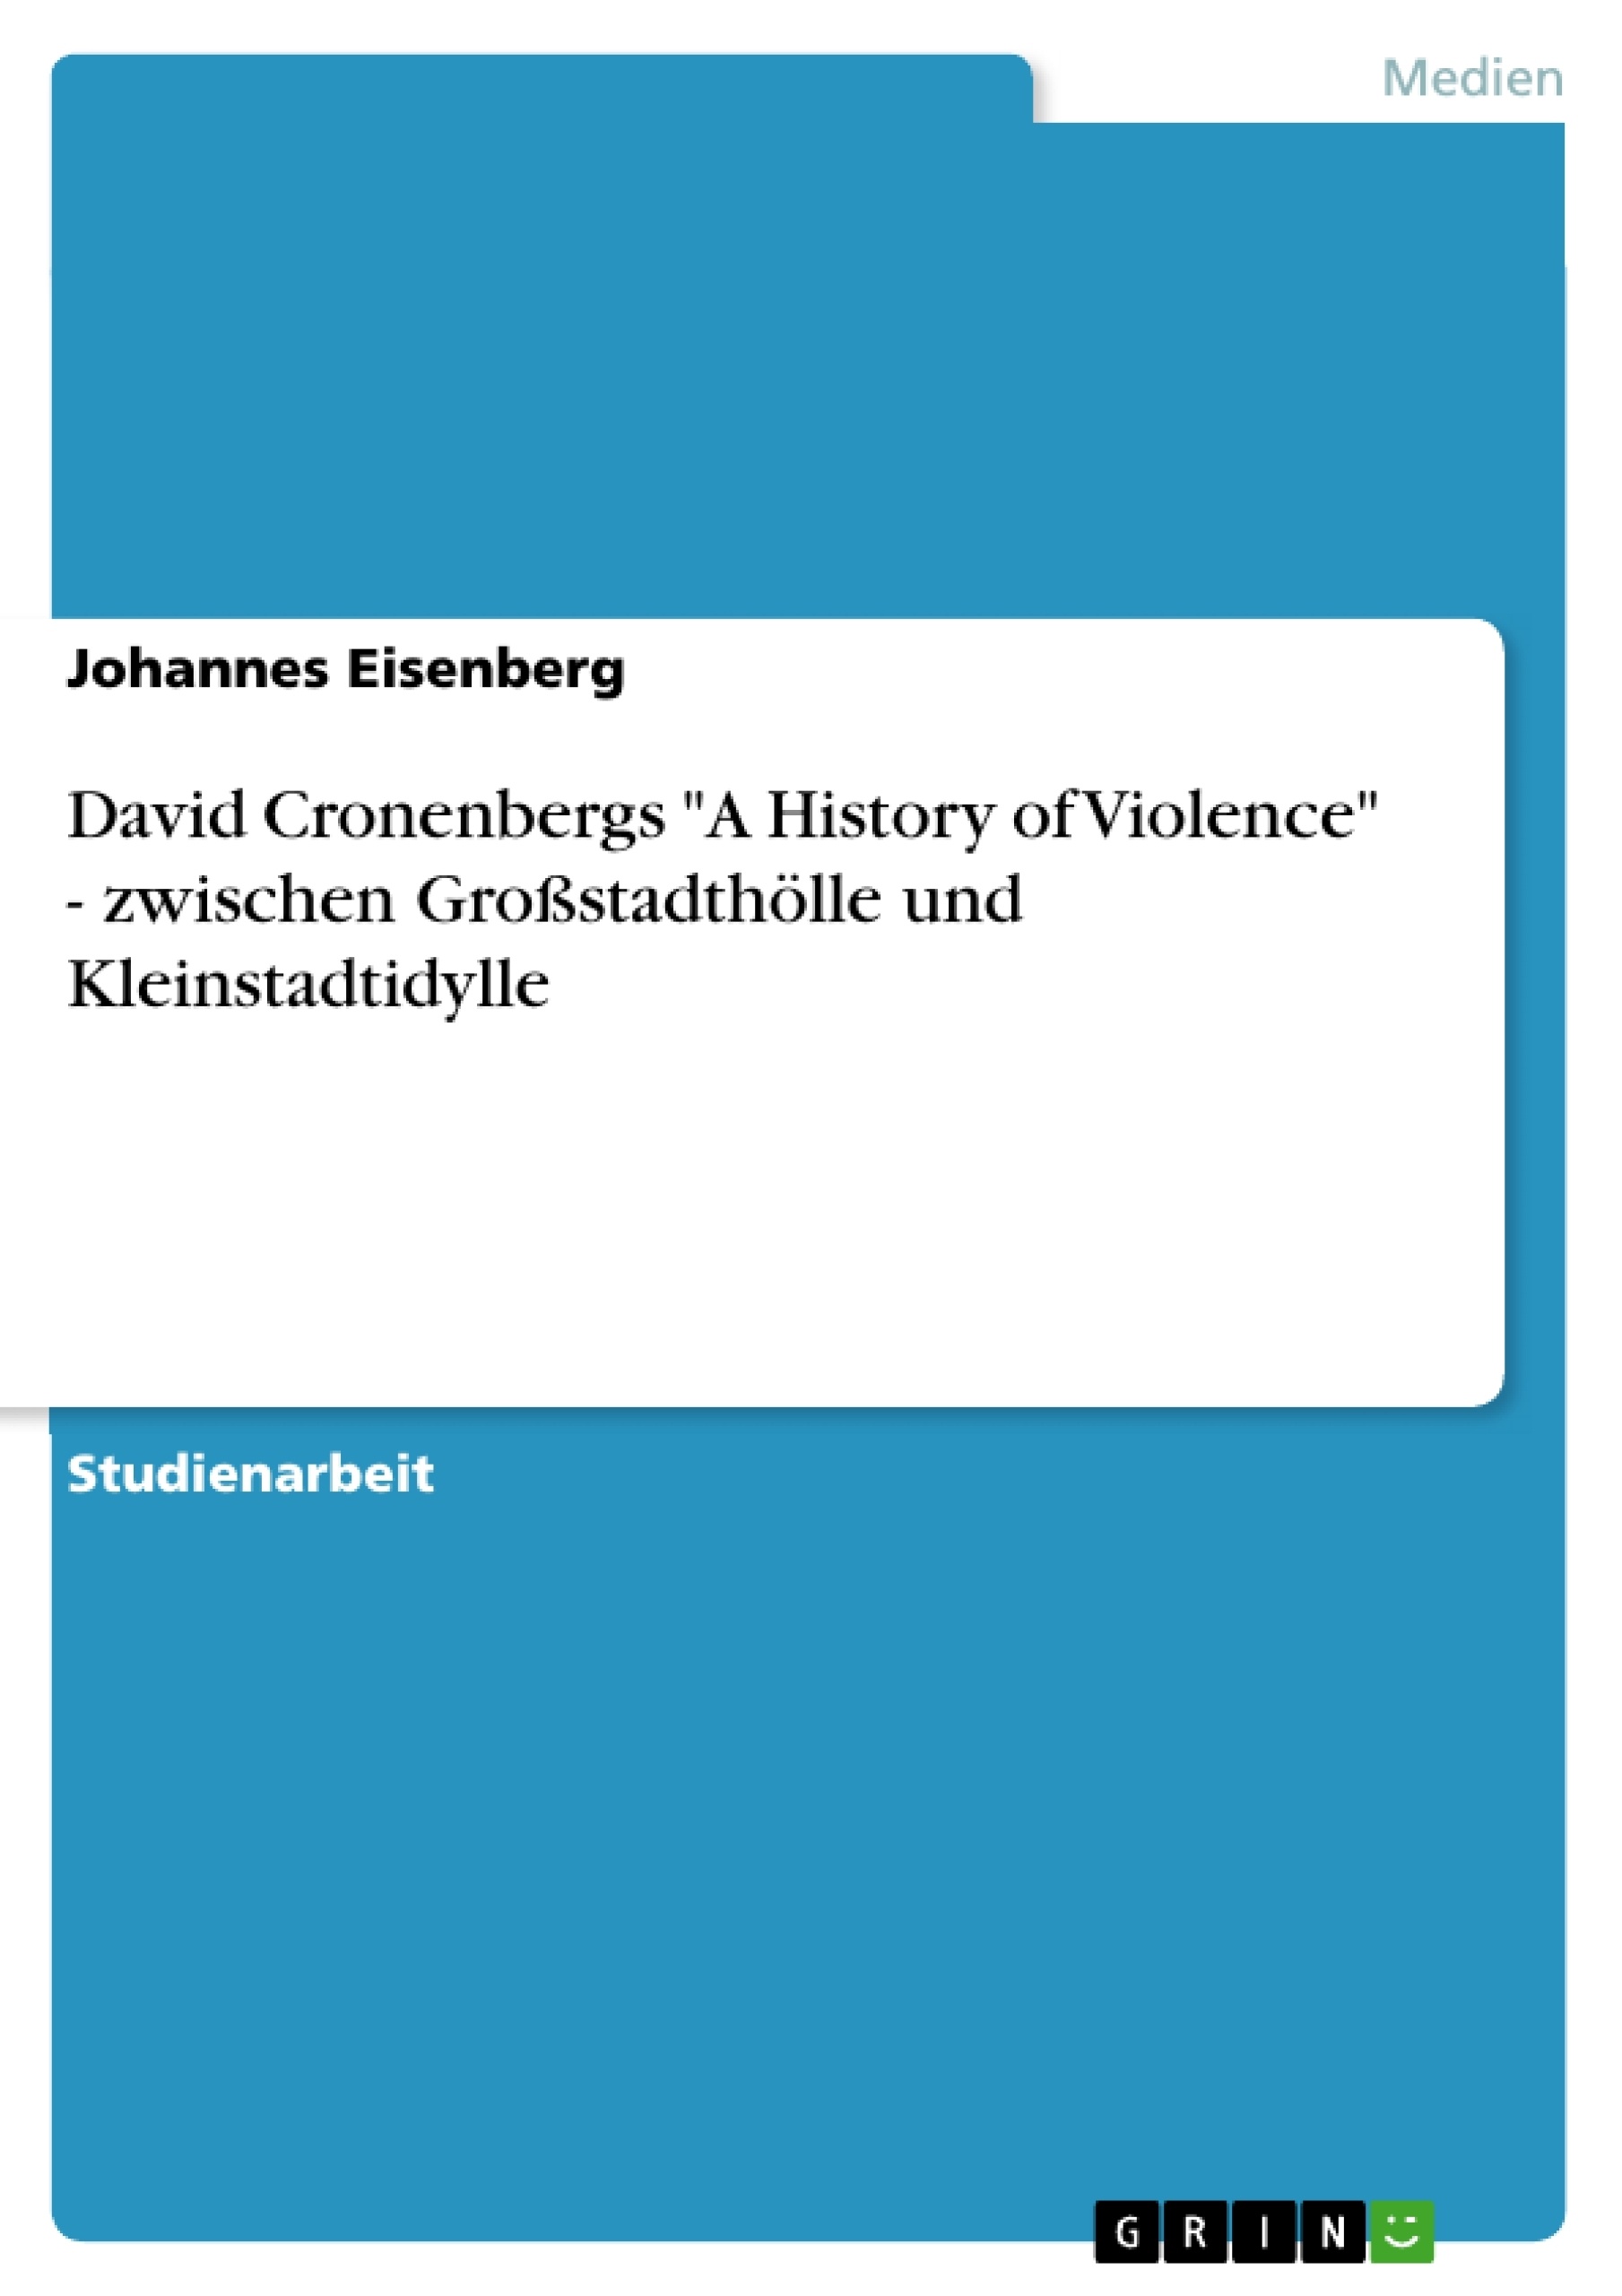 Título: David Cronenbergs "A History of Violence" - zwischen Großstadthölle und Kleinstadtidylle